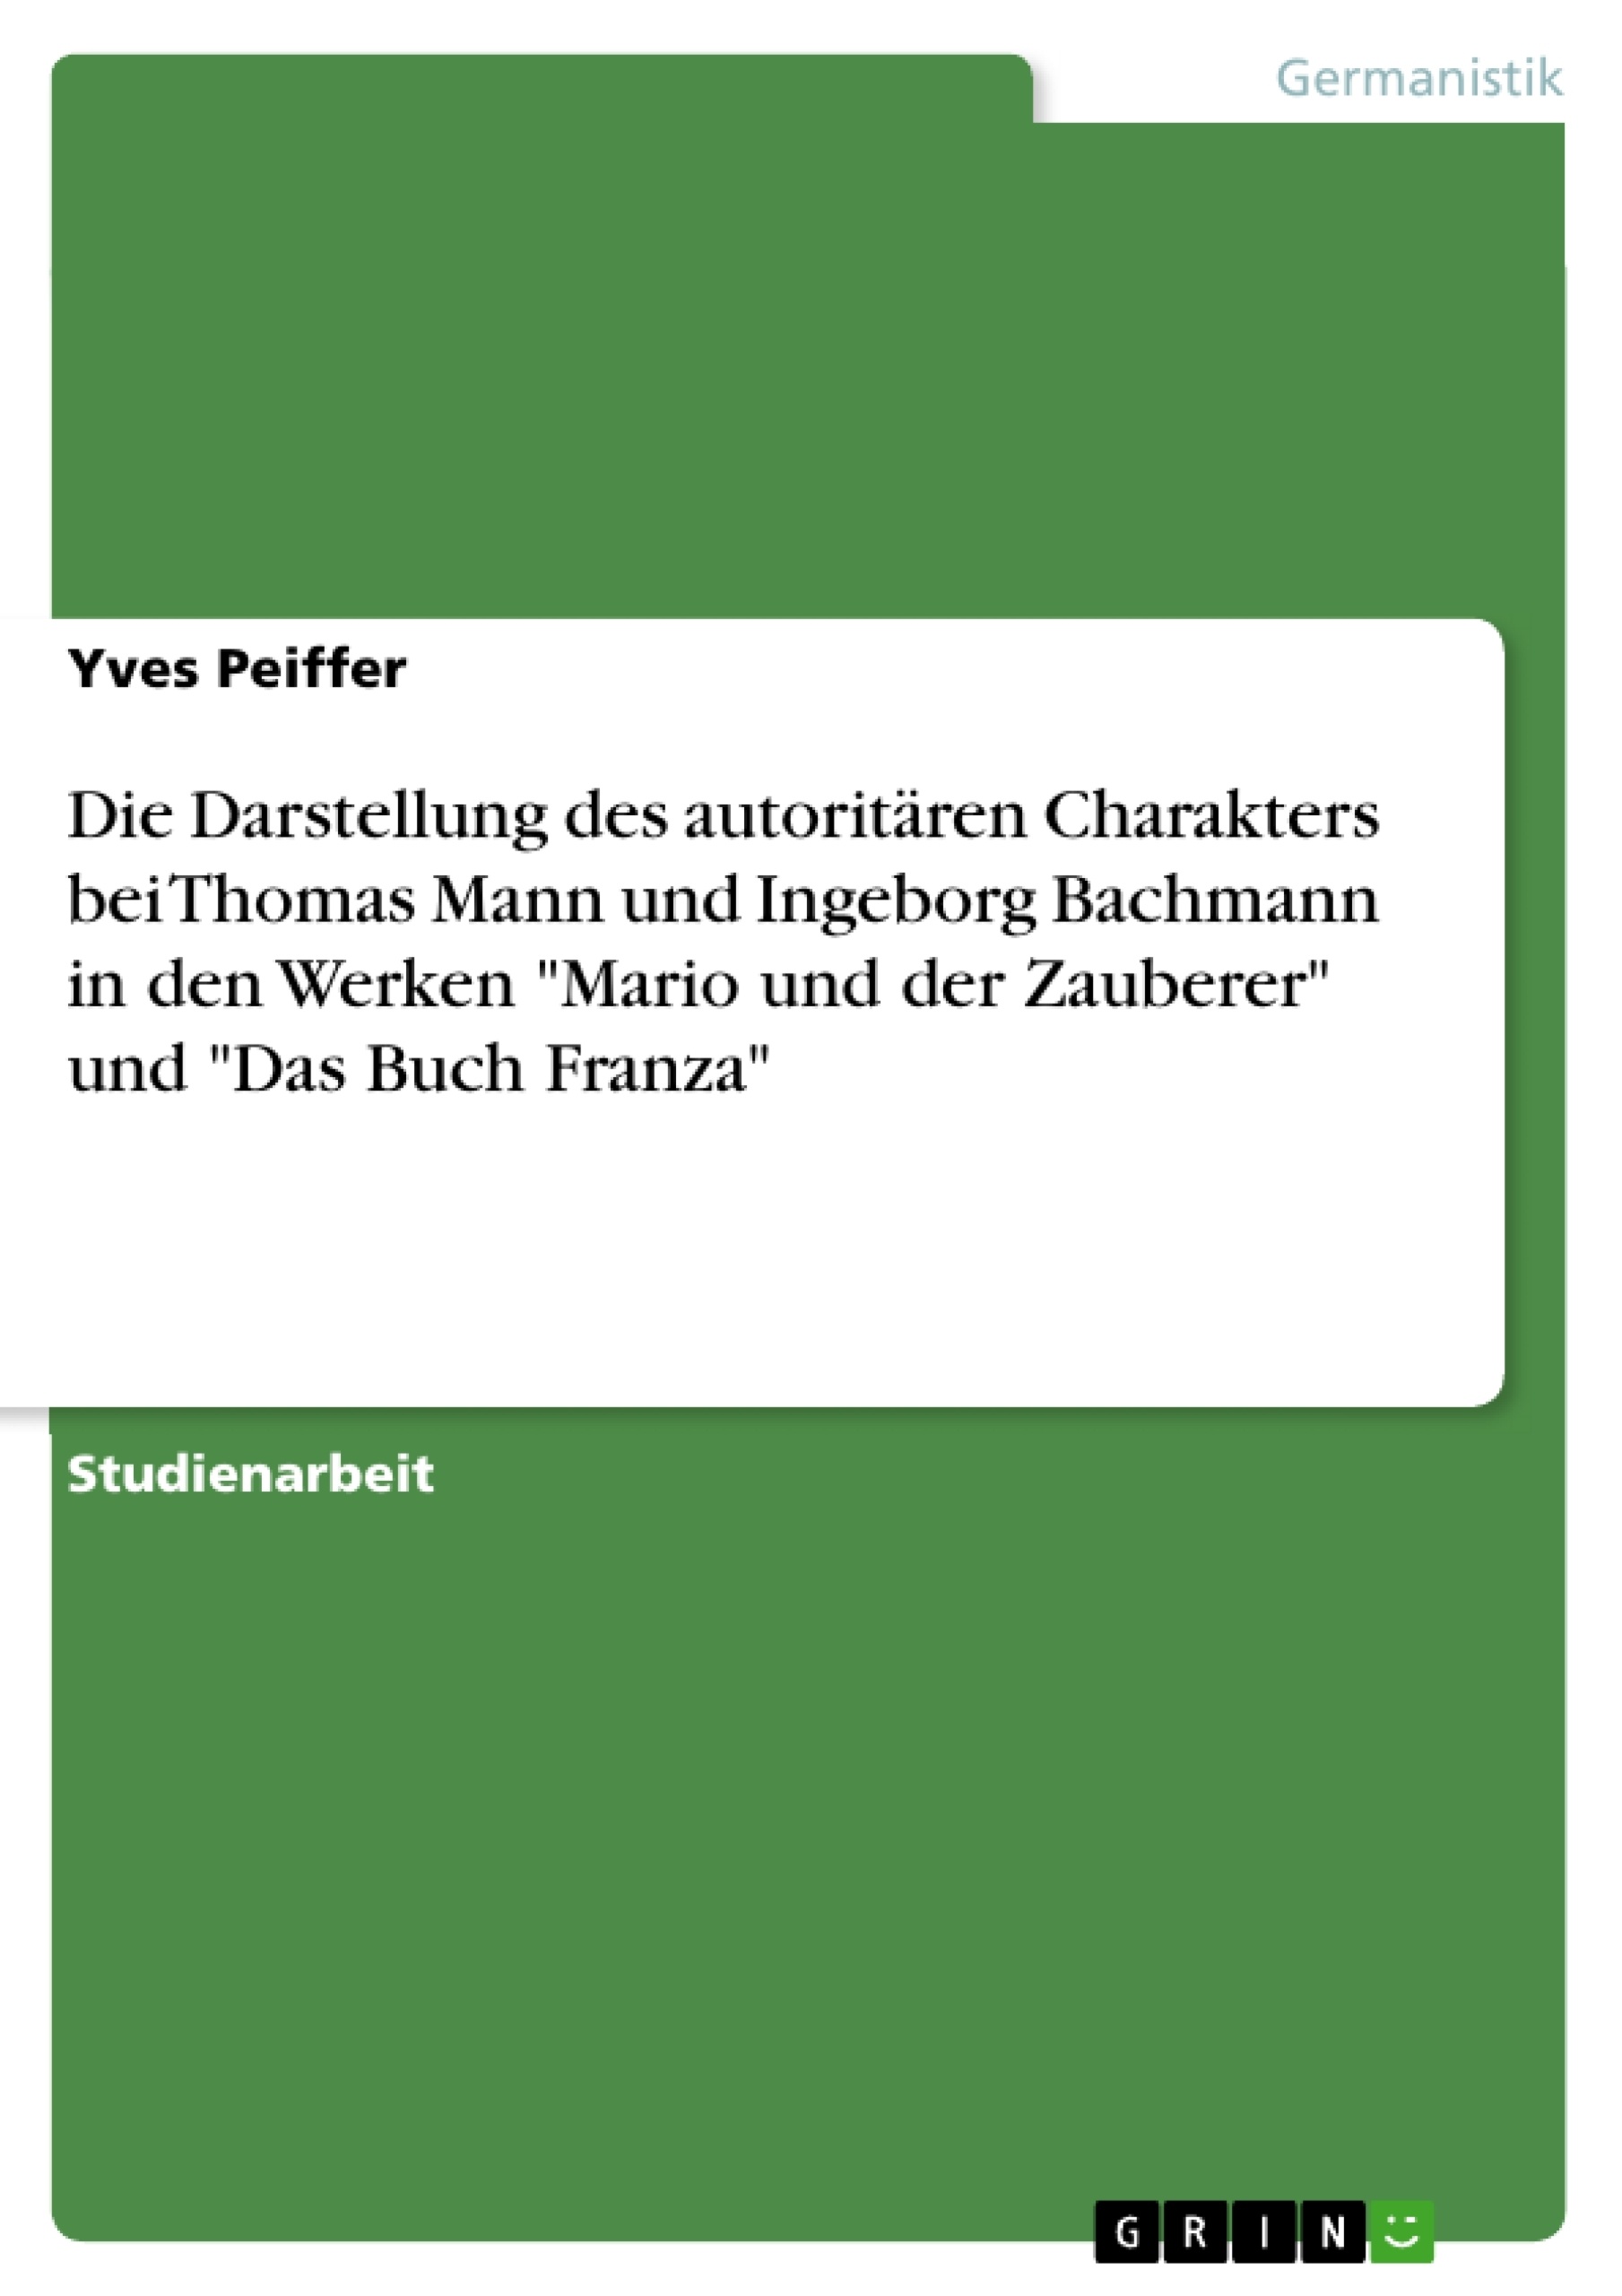 Titre: Die Darstellung des autoritären Charakters bei Thomas Mann und Ingeborg Bachmann in den Werken "Mario und der Zauberer" und "Das Buch Franza"